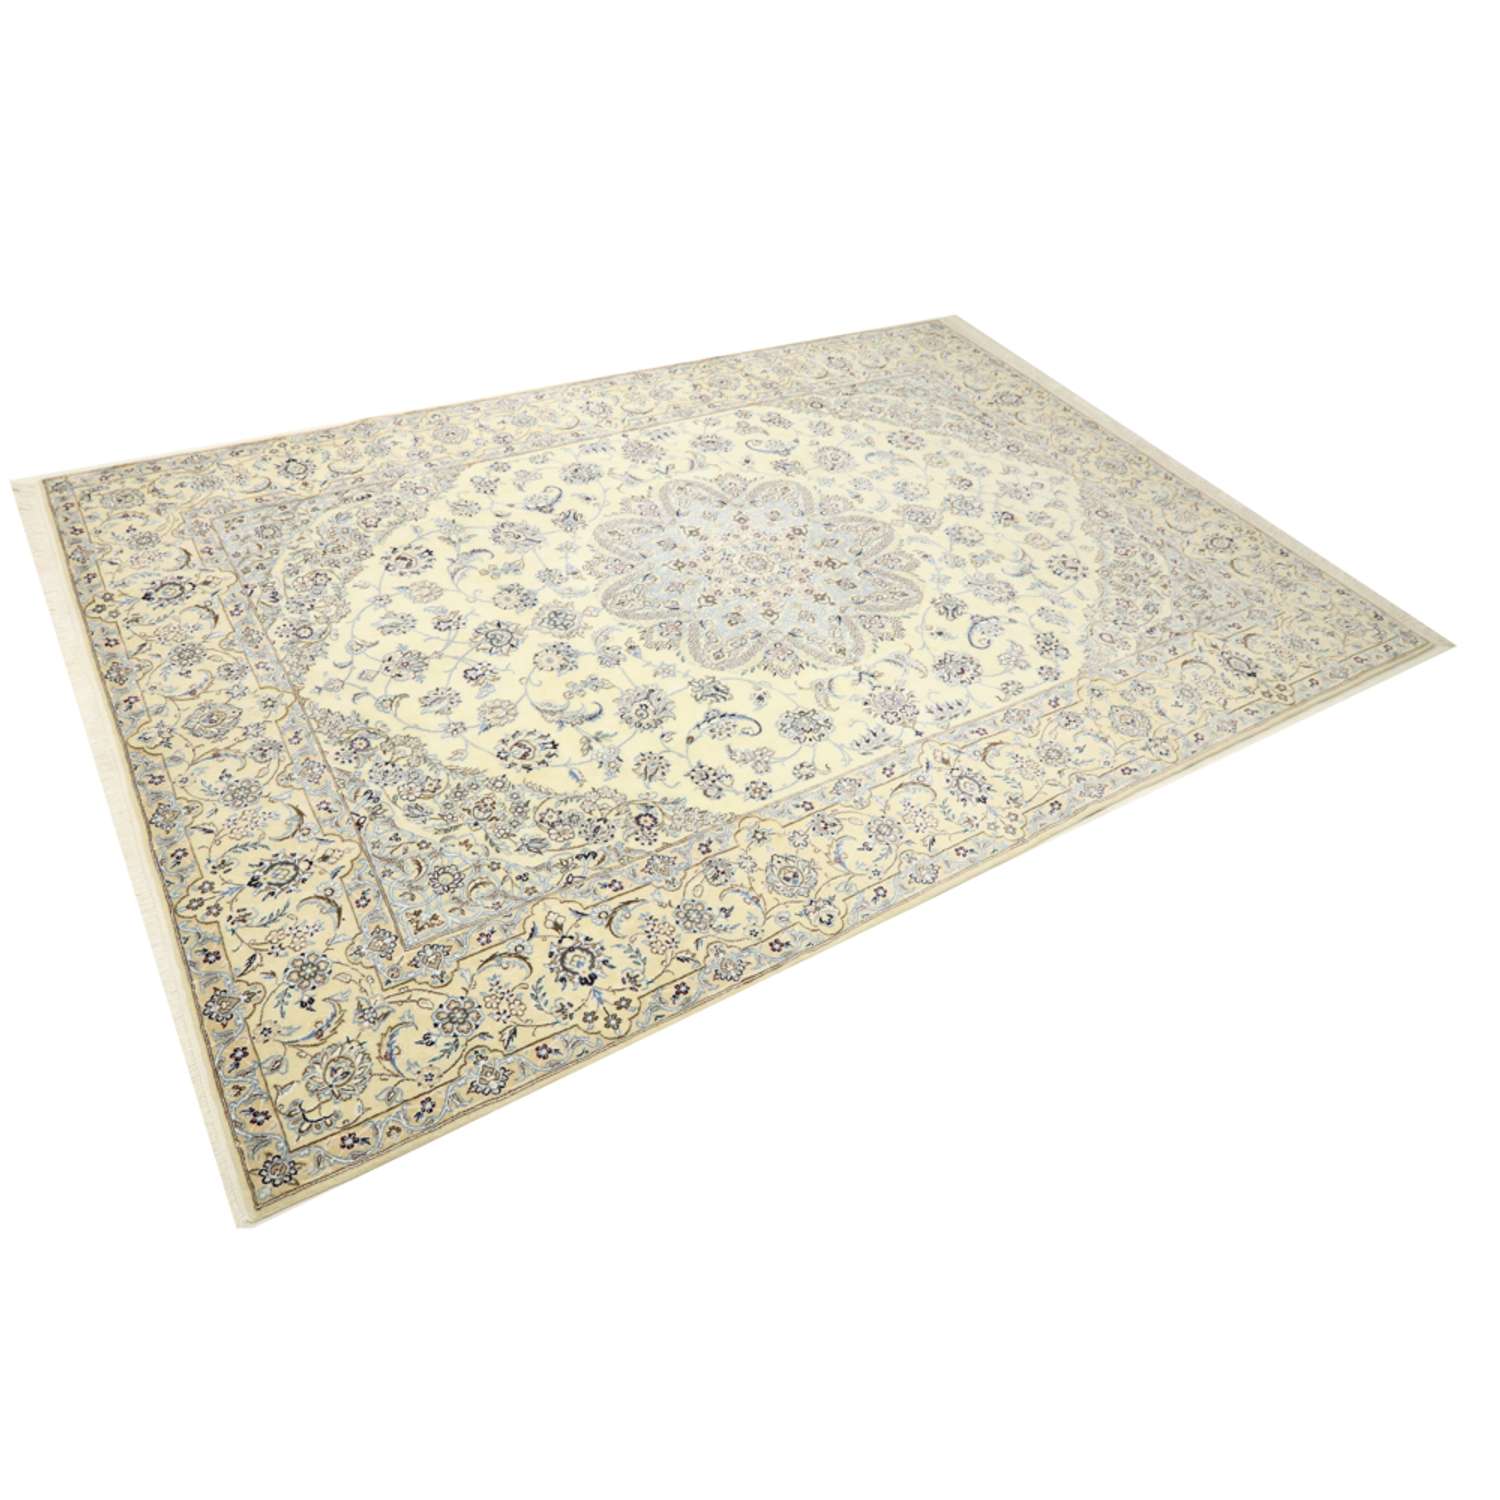 Persisk teppe - Nain - Royal - 360 x 245 cm - krem